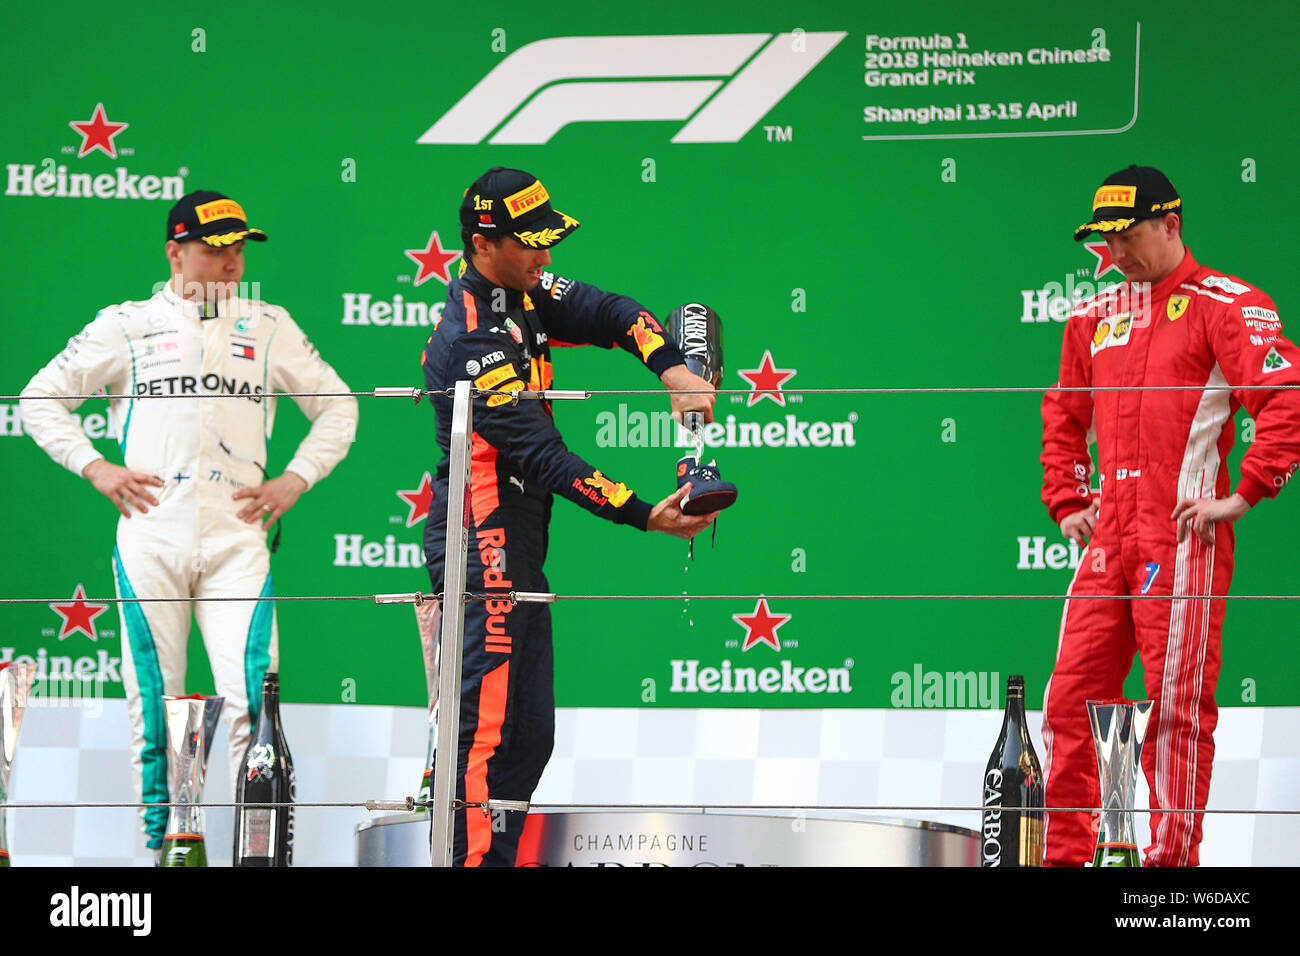 Pilote de F1 australien Daniel Ricciardo de Red Bull Racing, centre, se  déverse en champagne sa chaussure sur le podium après avoir remporté la Formule  1 2018 Chine Photo Stock - Alamy